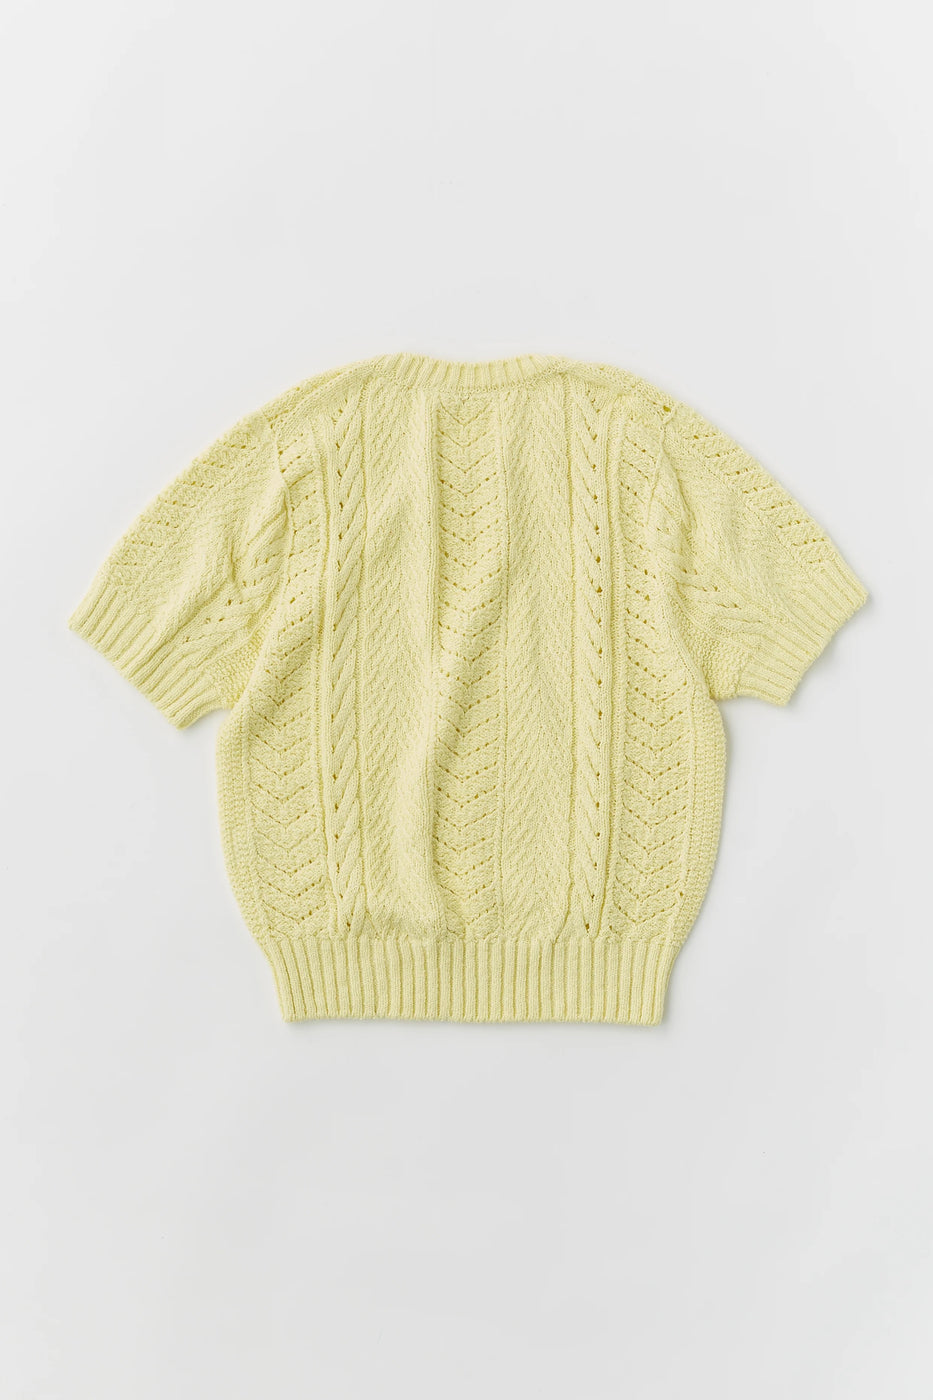 Unfil オープン ワークケーブル ニット セーター, Cream Yellow